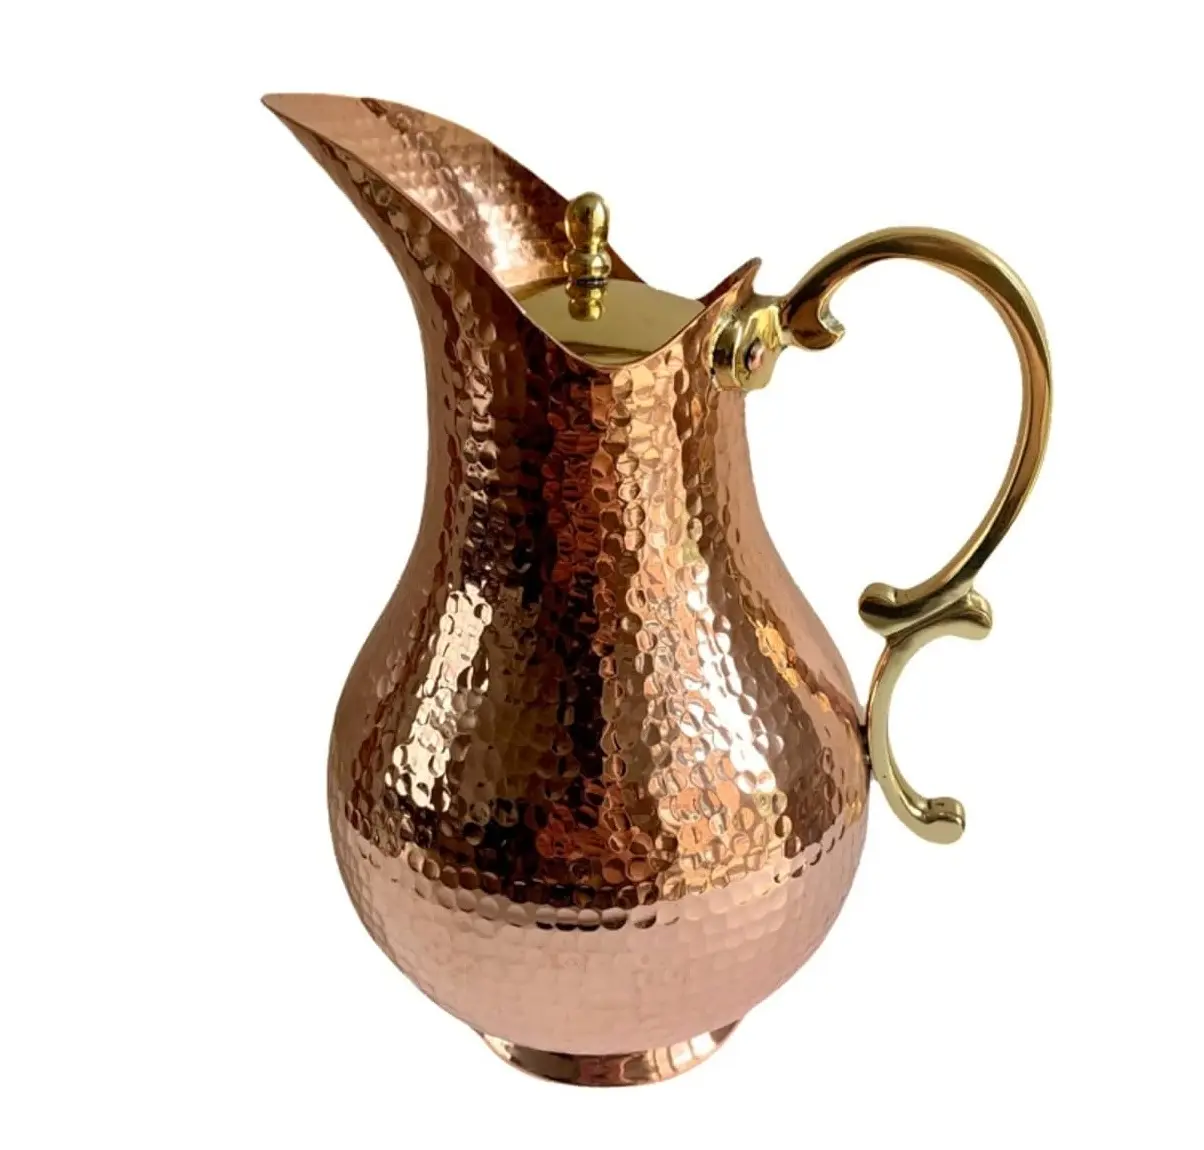 Lujosa jarra de mula de Moscú con agua de cobre martillada, vaso de chupito de cobre hecho a mano, jarra de cobre puro disponible a bajo costo